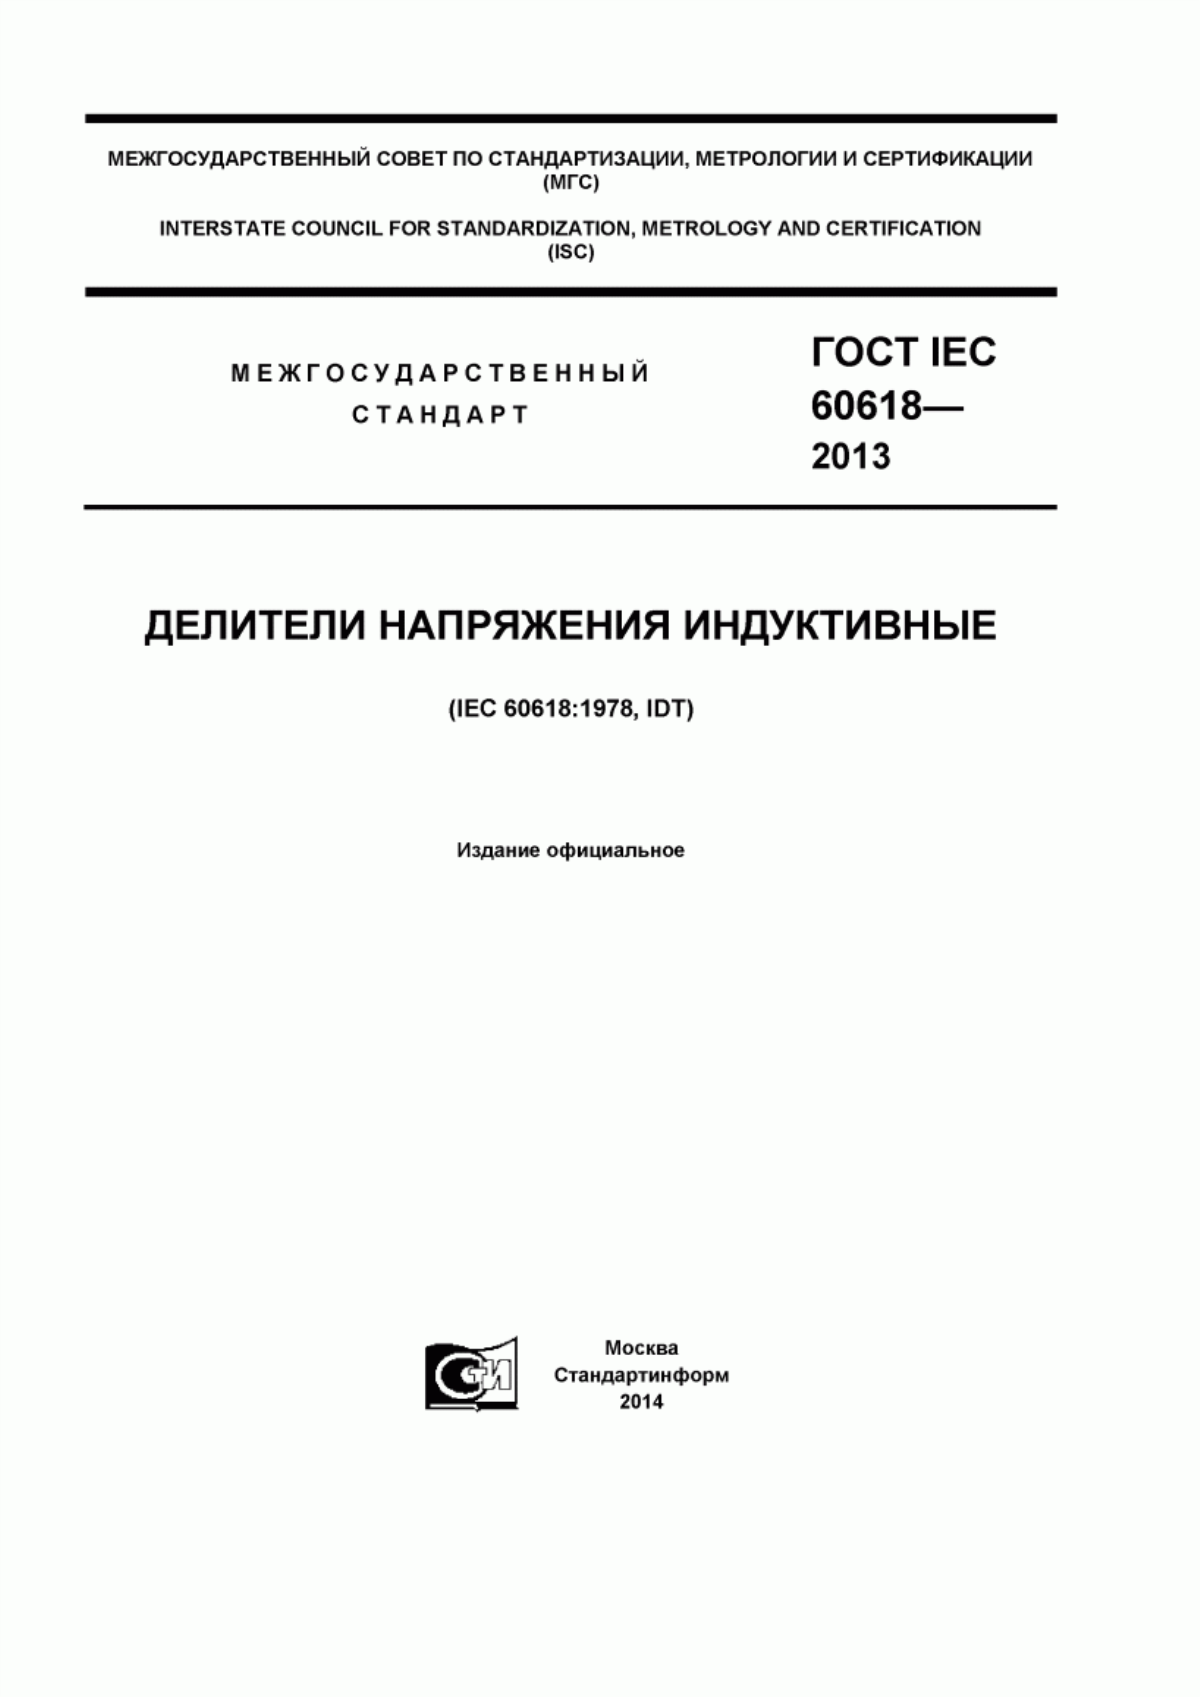 ГОСТ IEC 60618-2013 Делители напряжения индуктивные